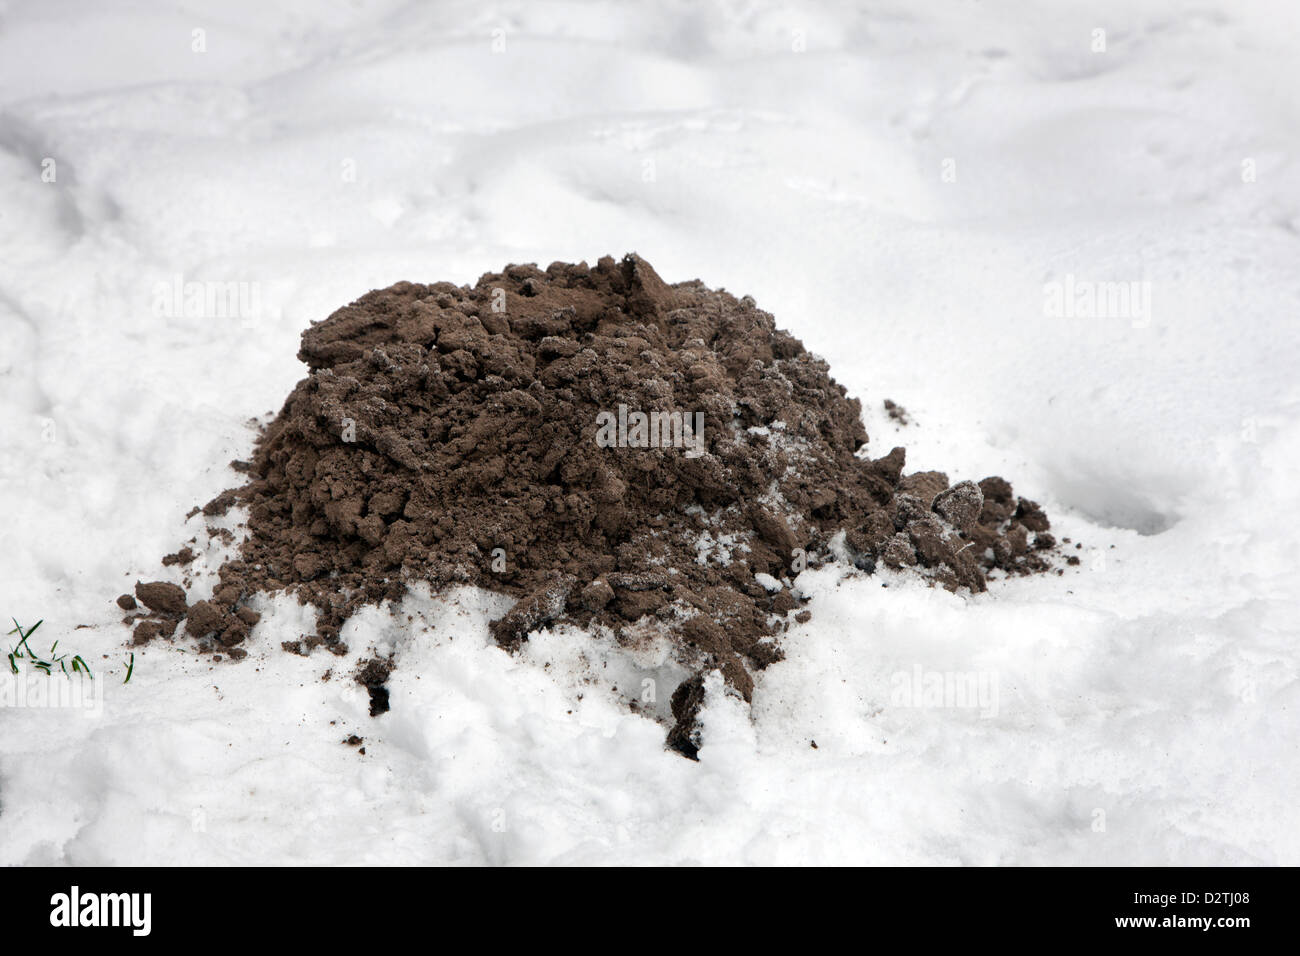 Molehill / mole mound / molecast europeo da parte delle mole (Talpa europaea) sul prato sotto la neve in inverno Foto Stock